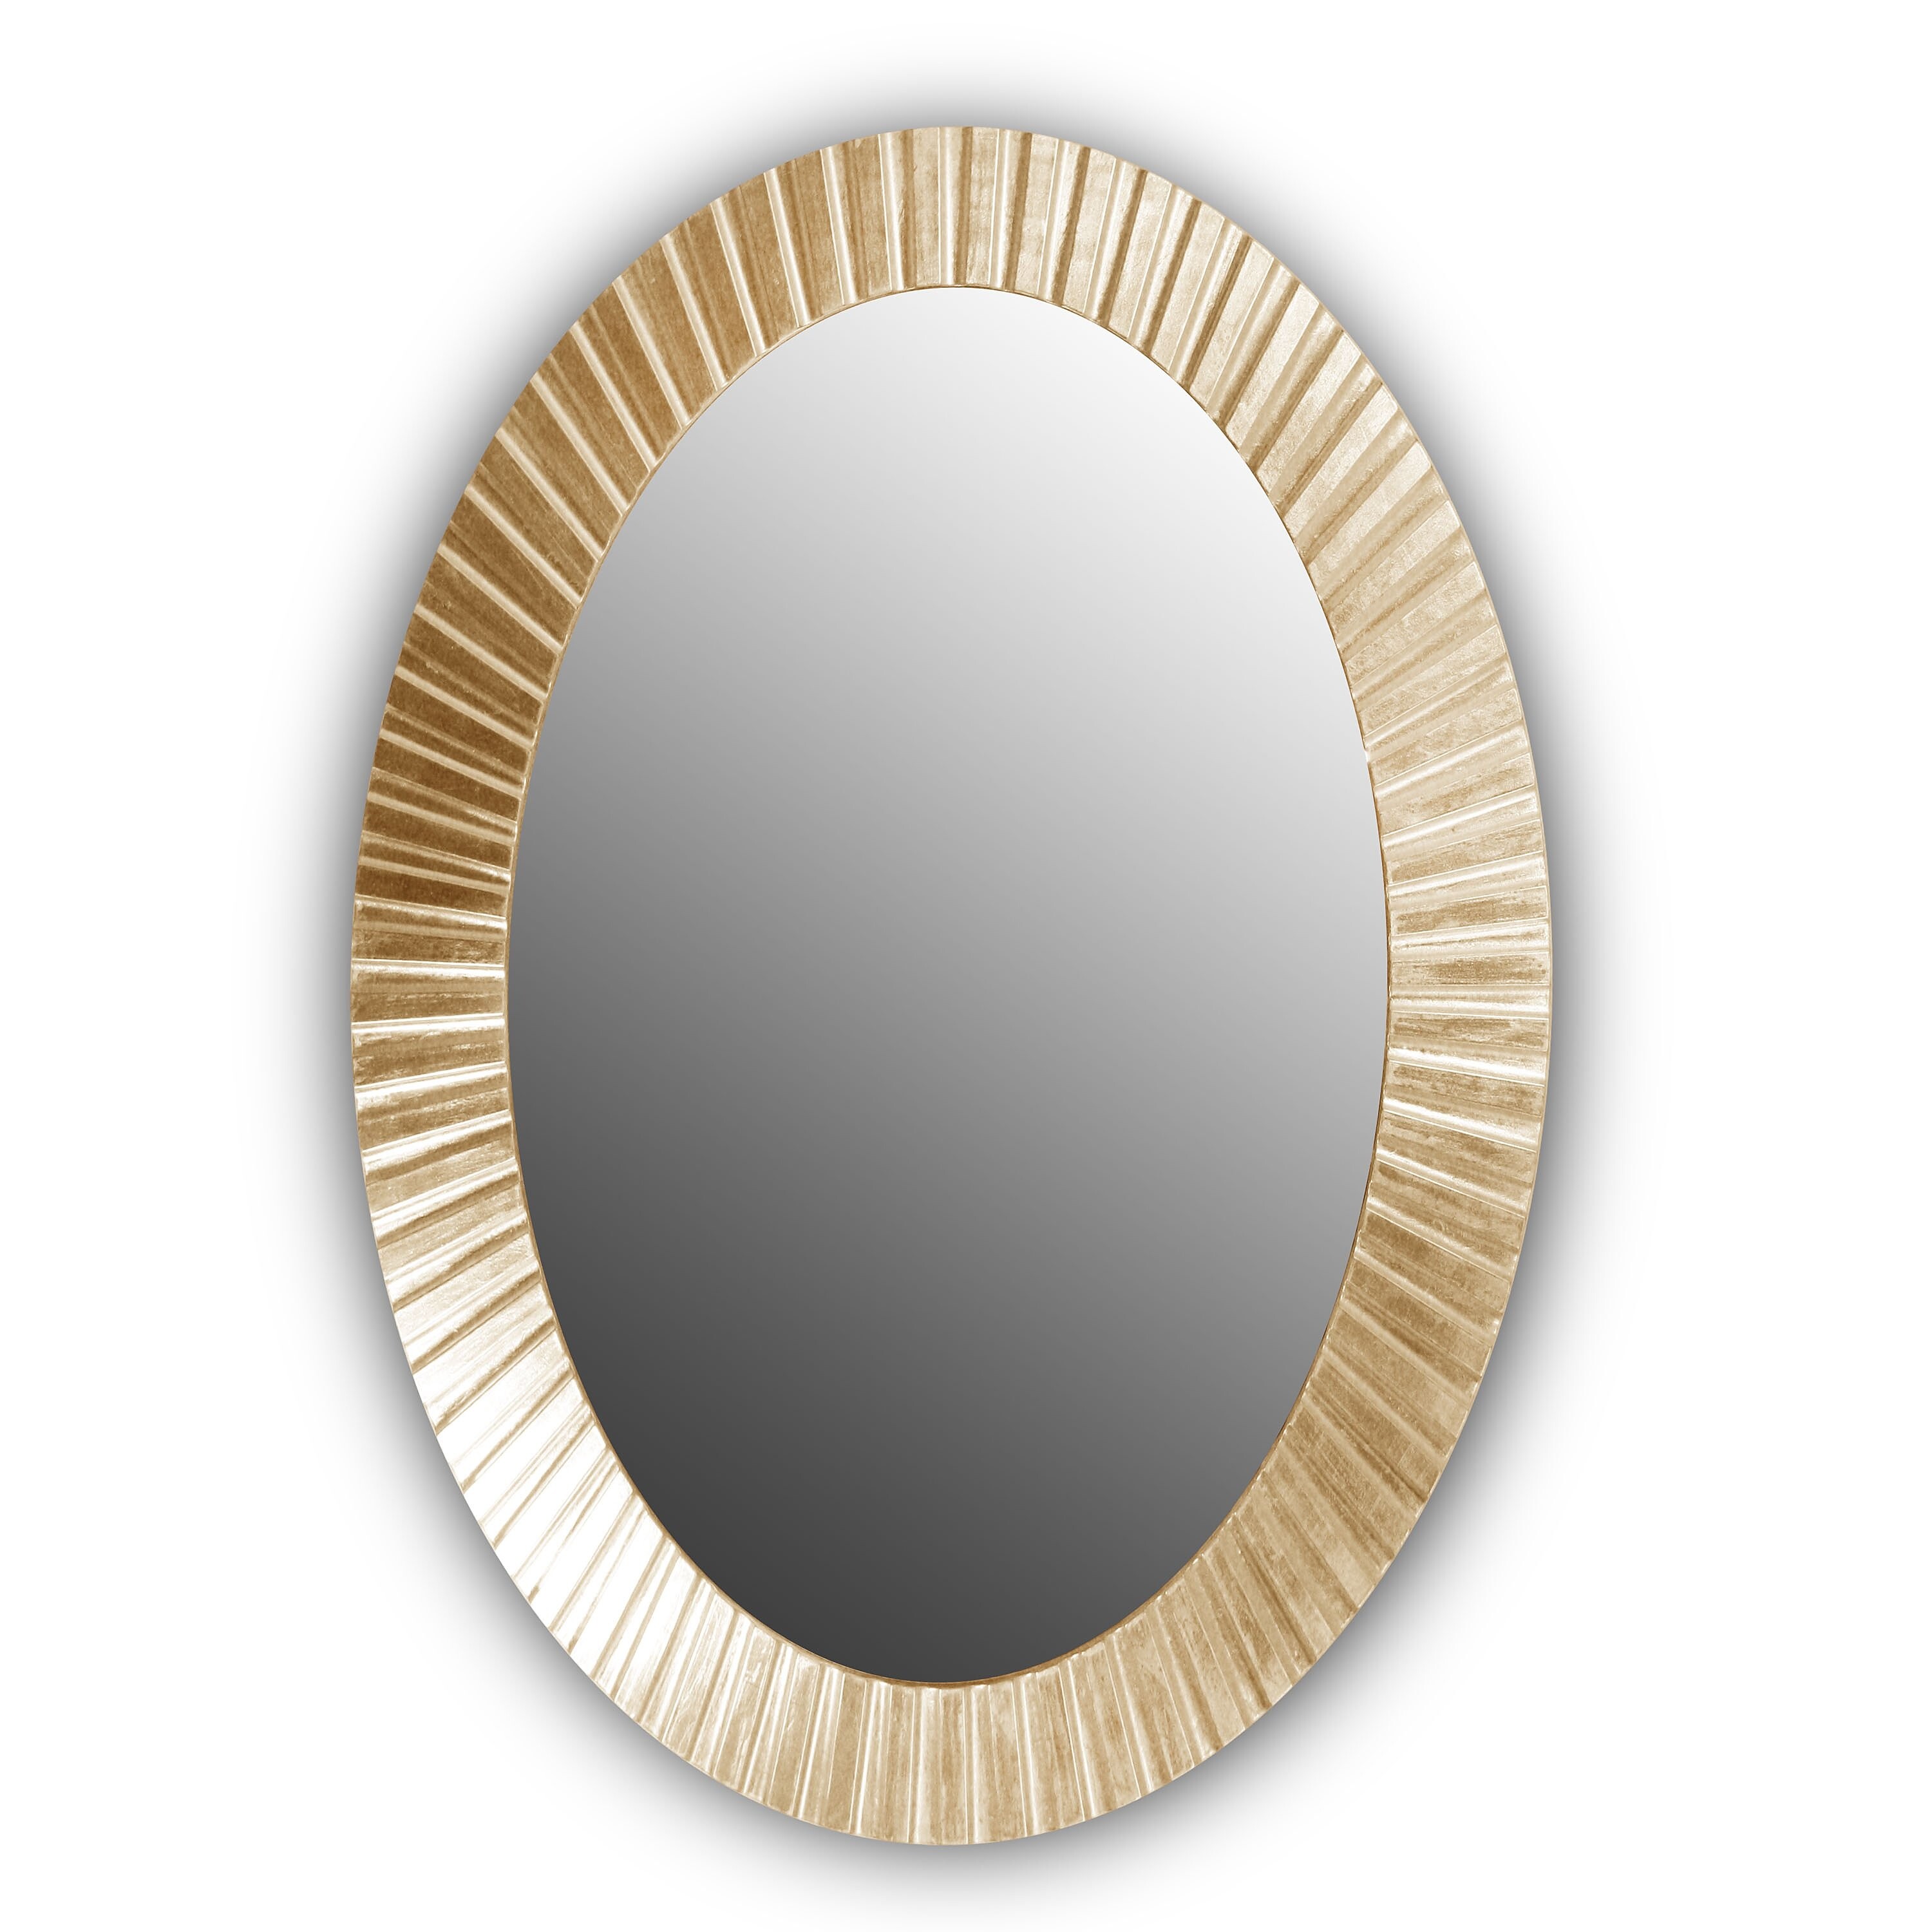 Золотое зеркало круглое настенное FASHION INDIO